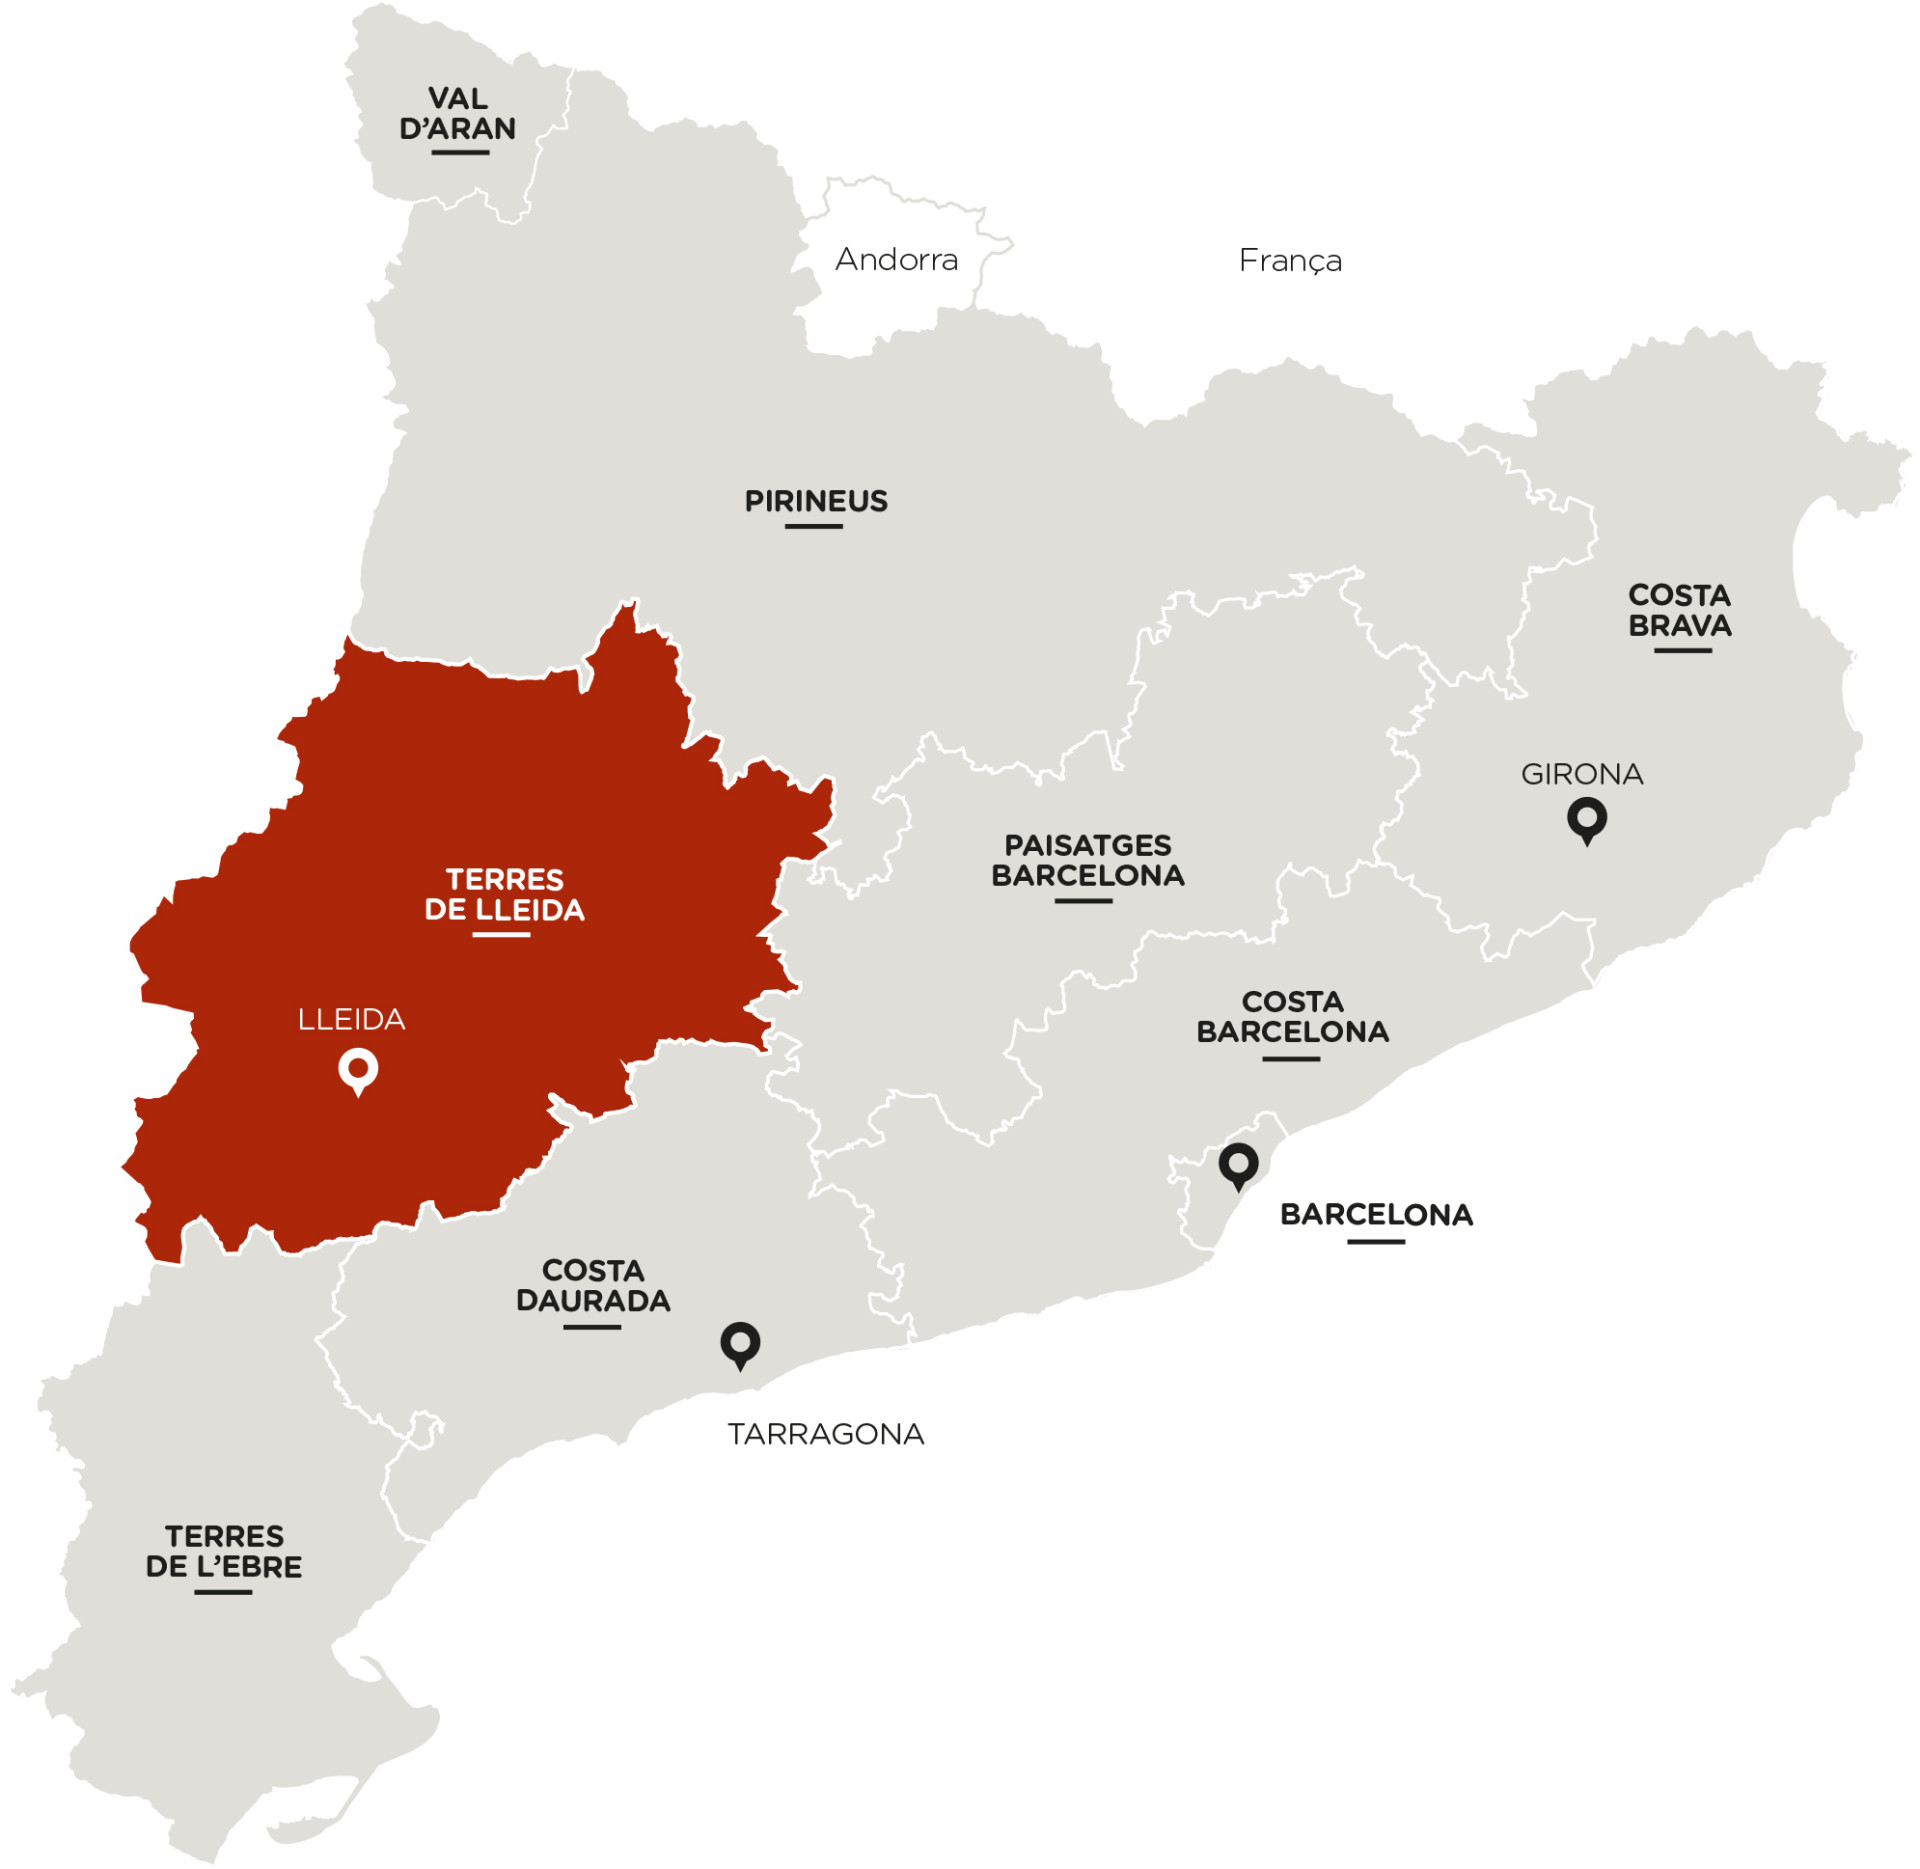 Terres de Lleida